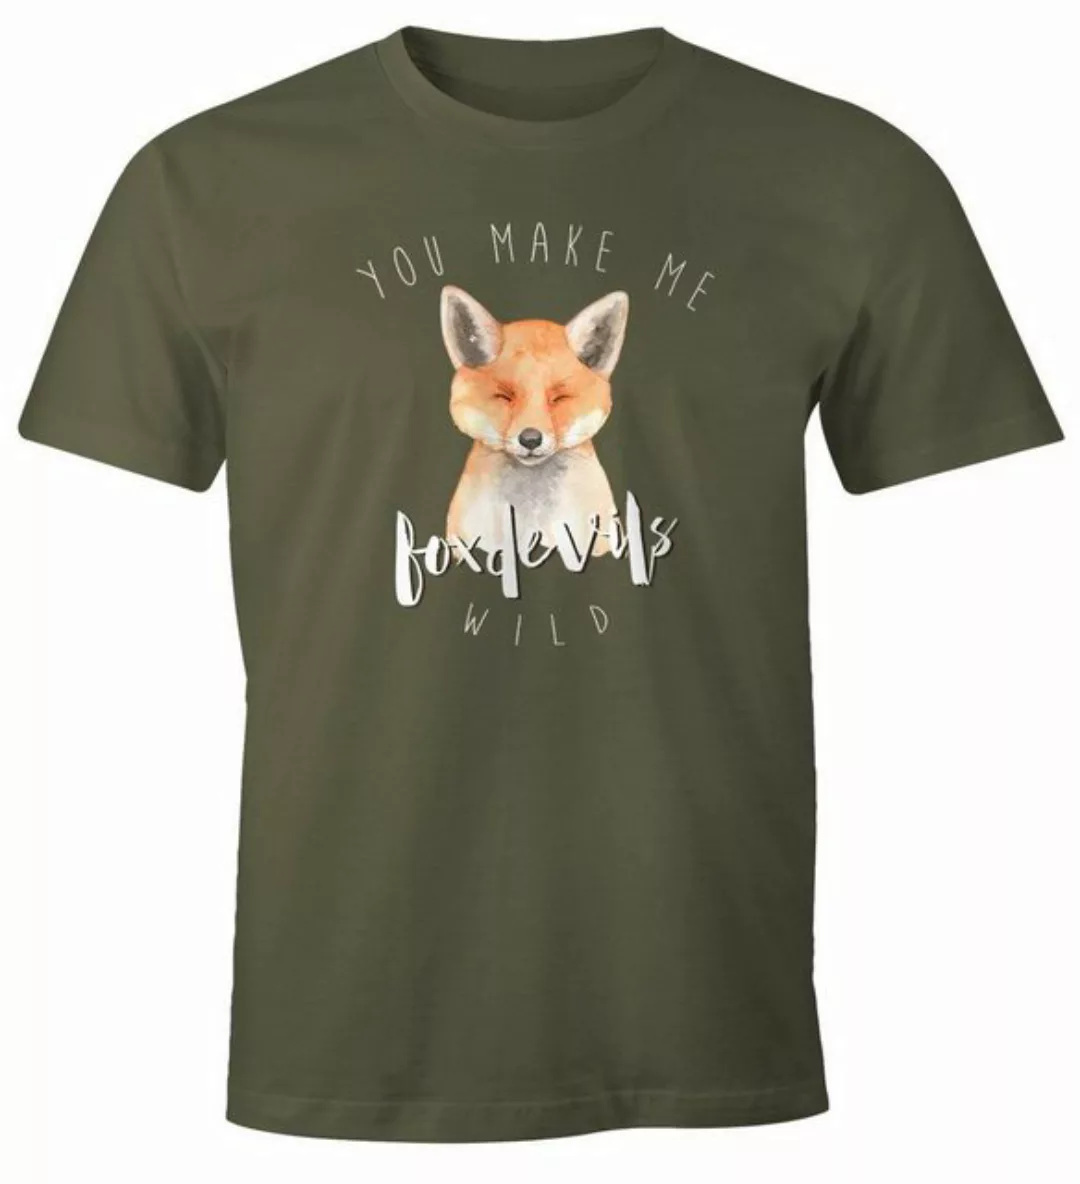 MoonWorks Print-Shirt Herren T-Shirt Gescenk You make me fox devils wild Li günstig online kaufen